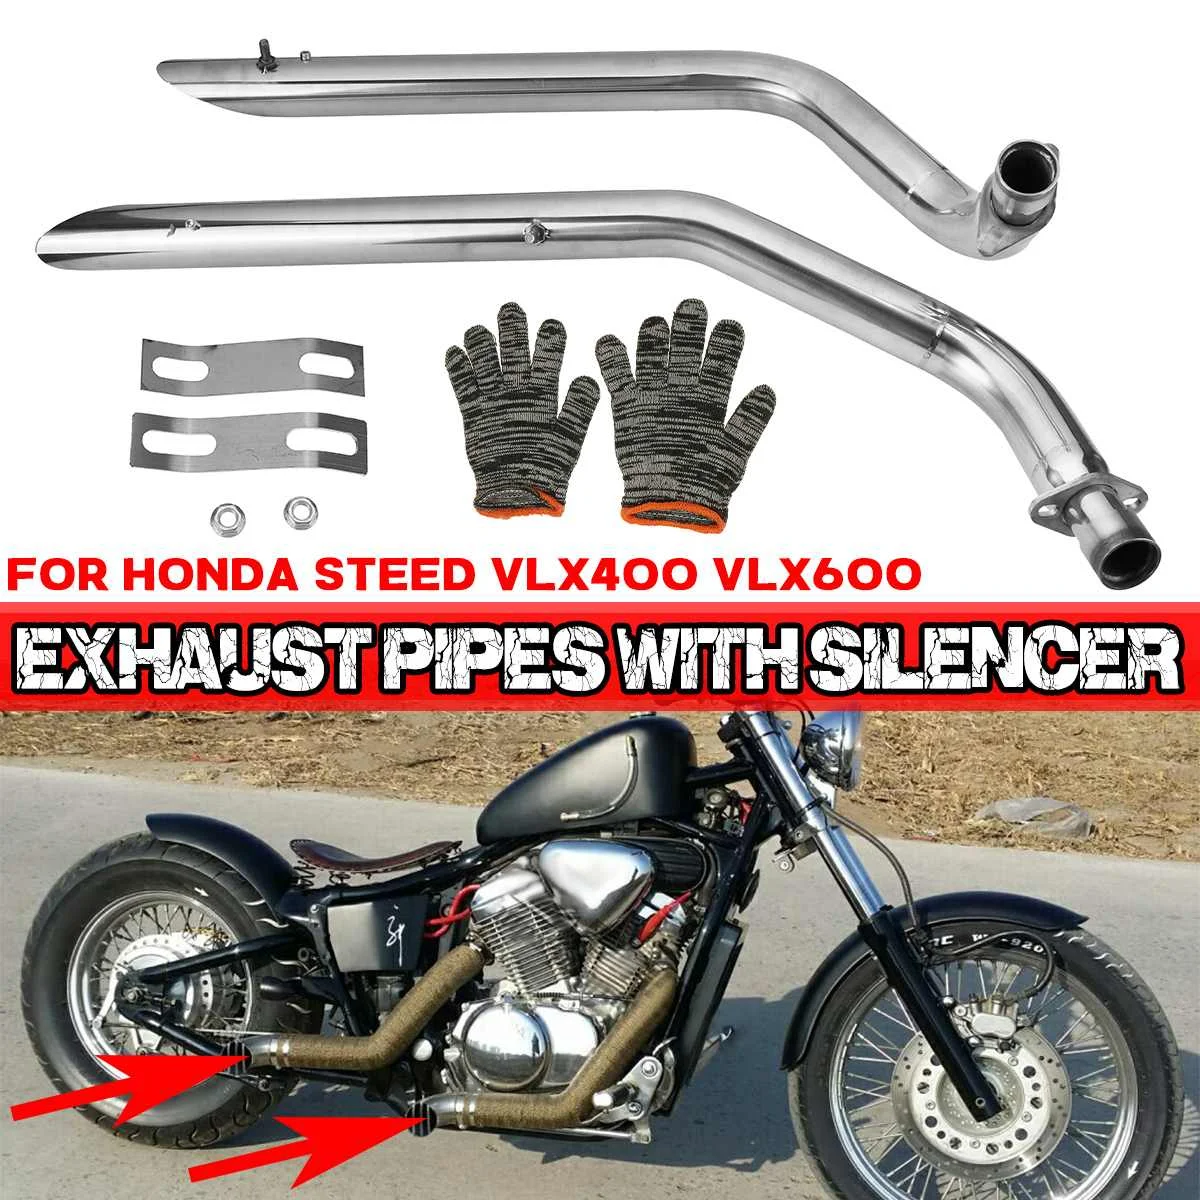 

Нержавеющая сталь 2x Мотоцикл выхлопной трубы с трубы глушителя полный выхлоп Системы + глушители для Honda Для конь VLX400 VLX600